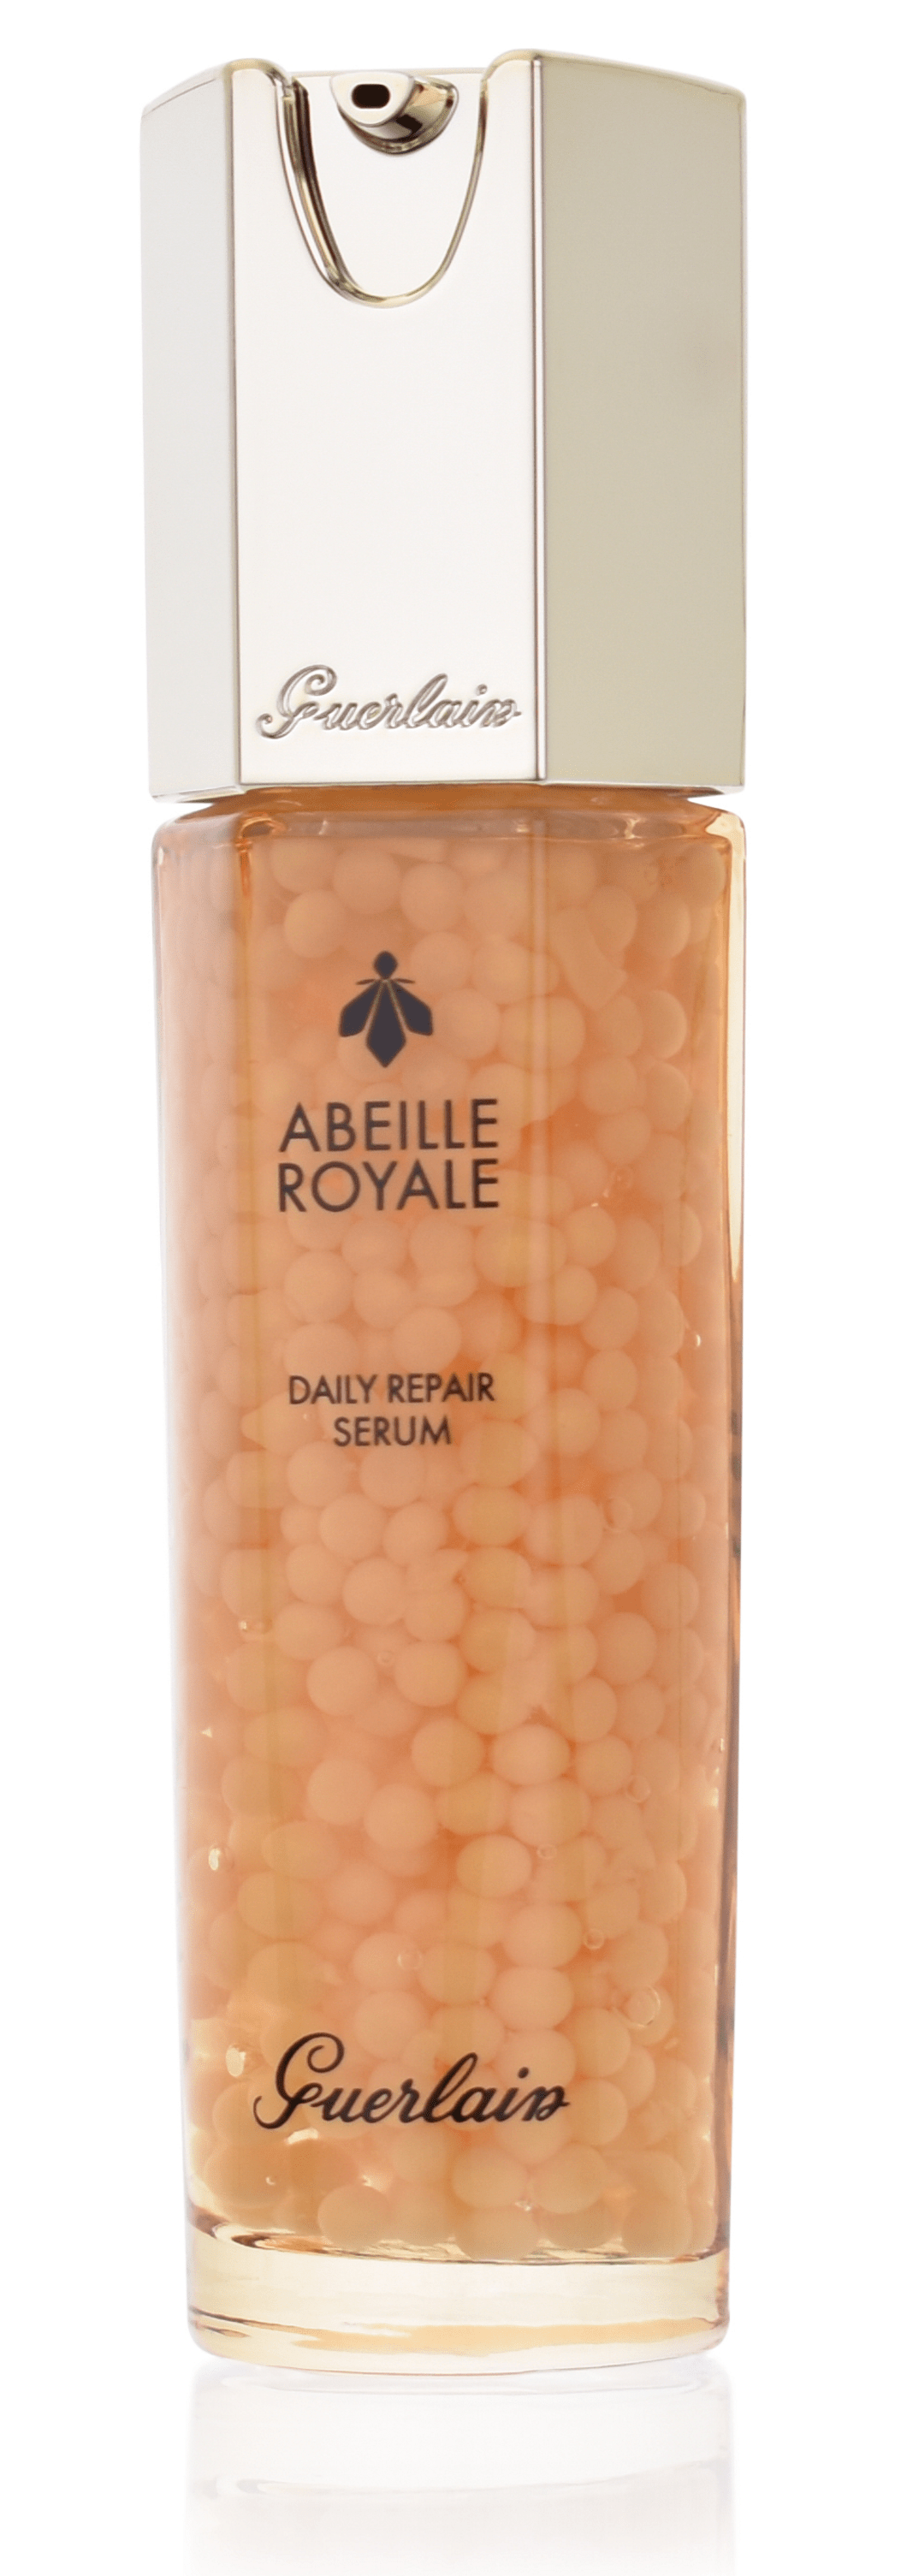 Guerlain Abeille Royale Daily Repair Serum 30 ml  